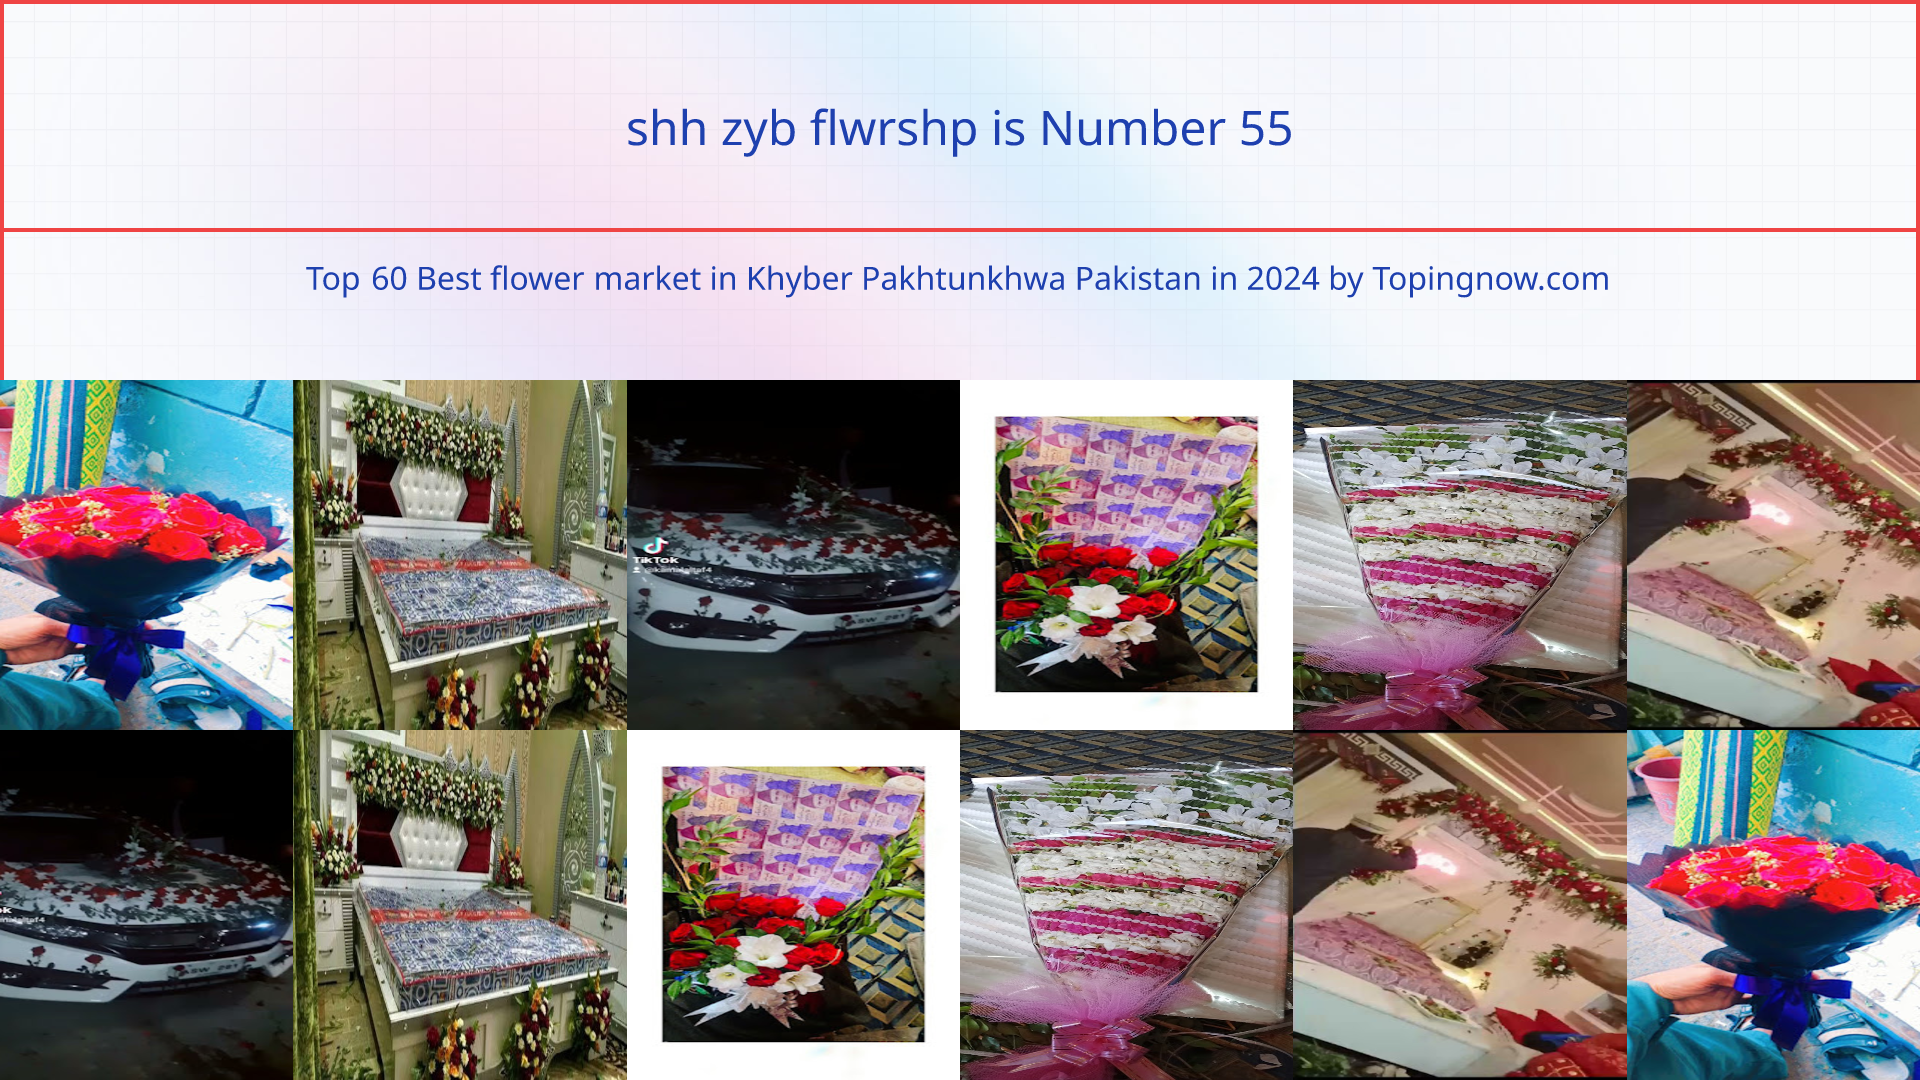 shh zyb flwrshp: Top 60 Best flower market in Khyber Pakhtunkhwa Pakistan in 2024